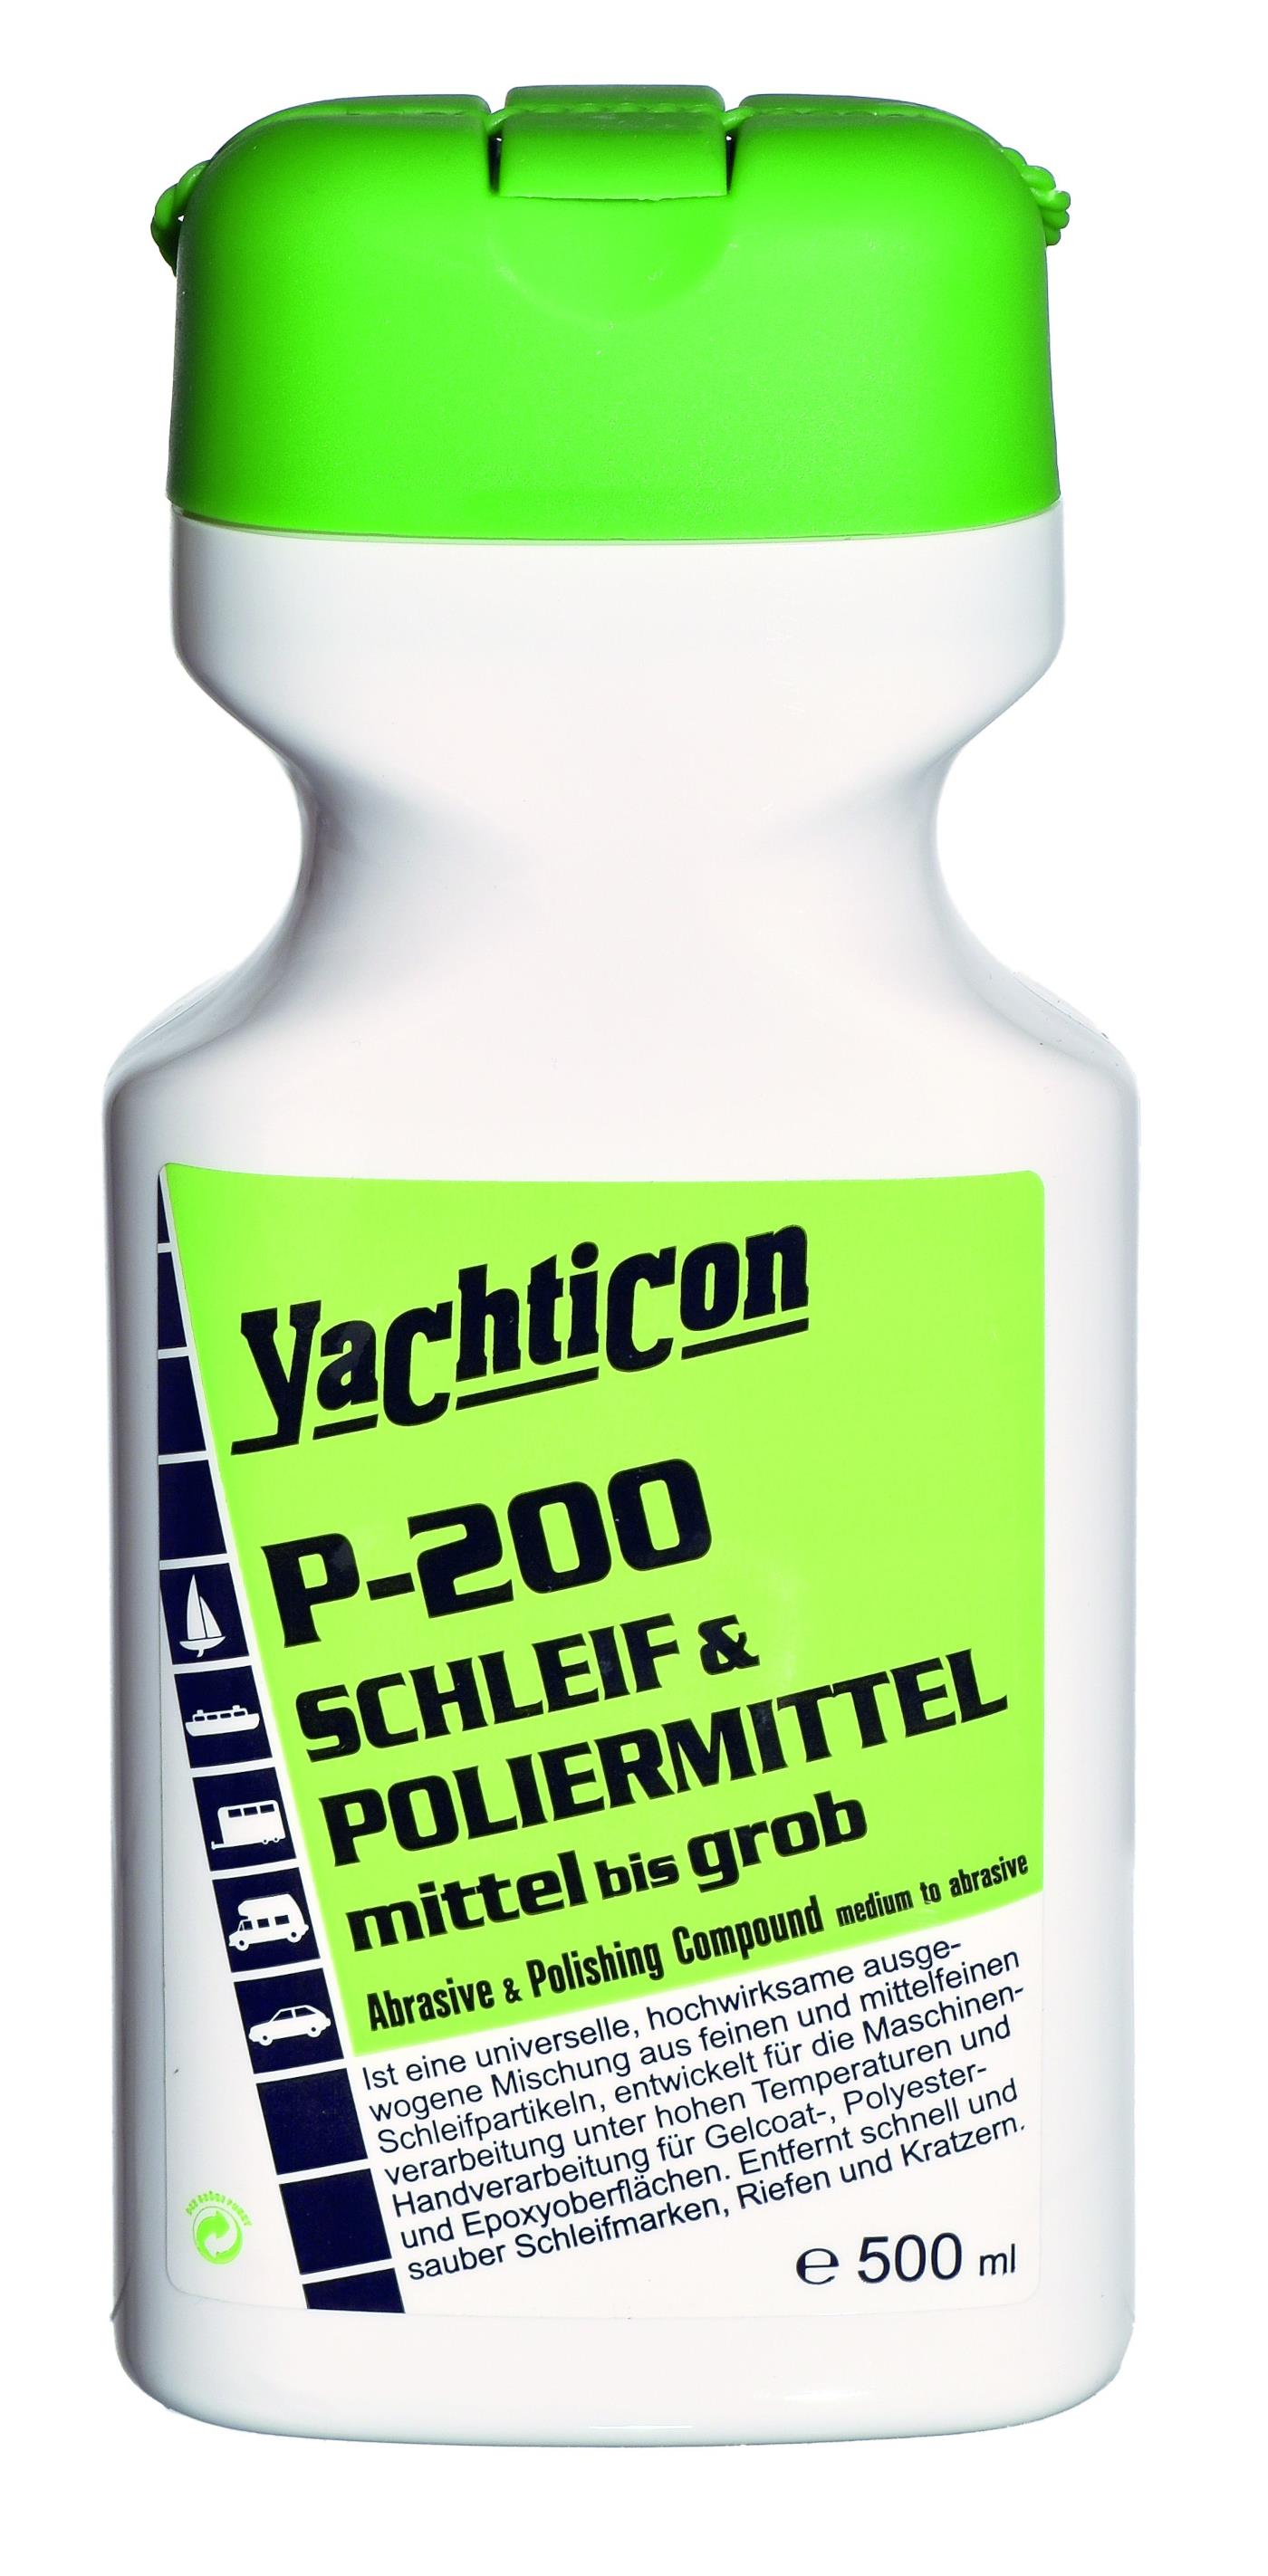 Yachticon P-200 Schleif- und Poliermittel mittel bis grob 500 ml